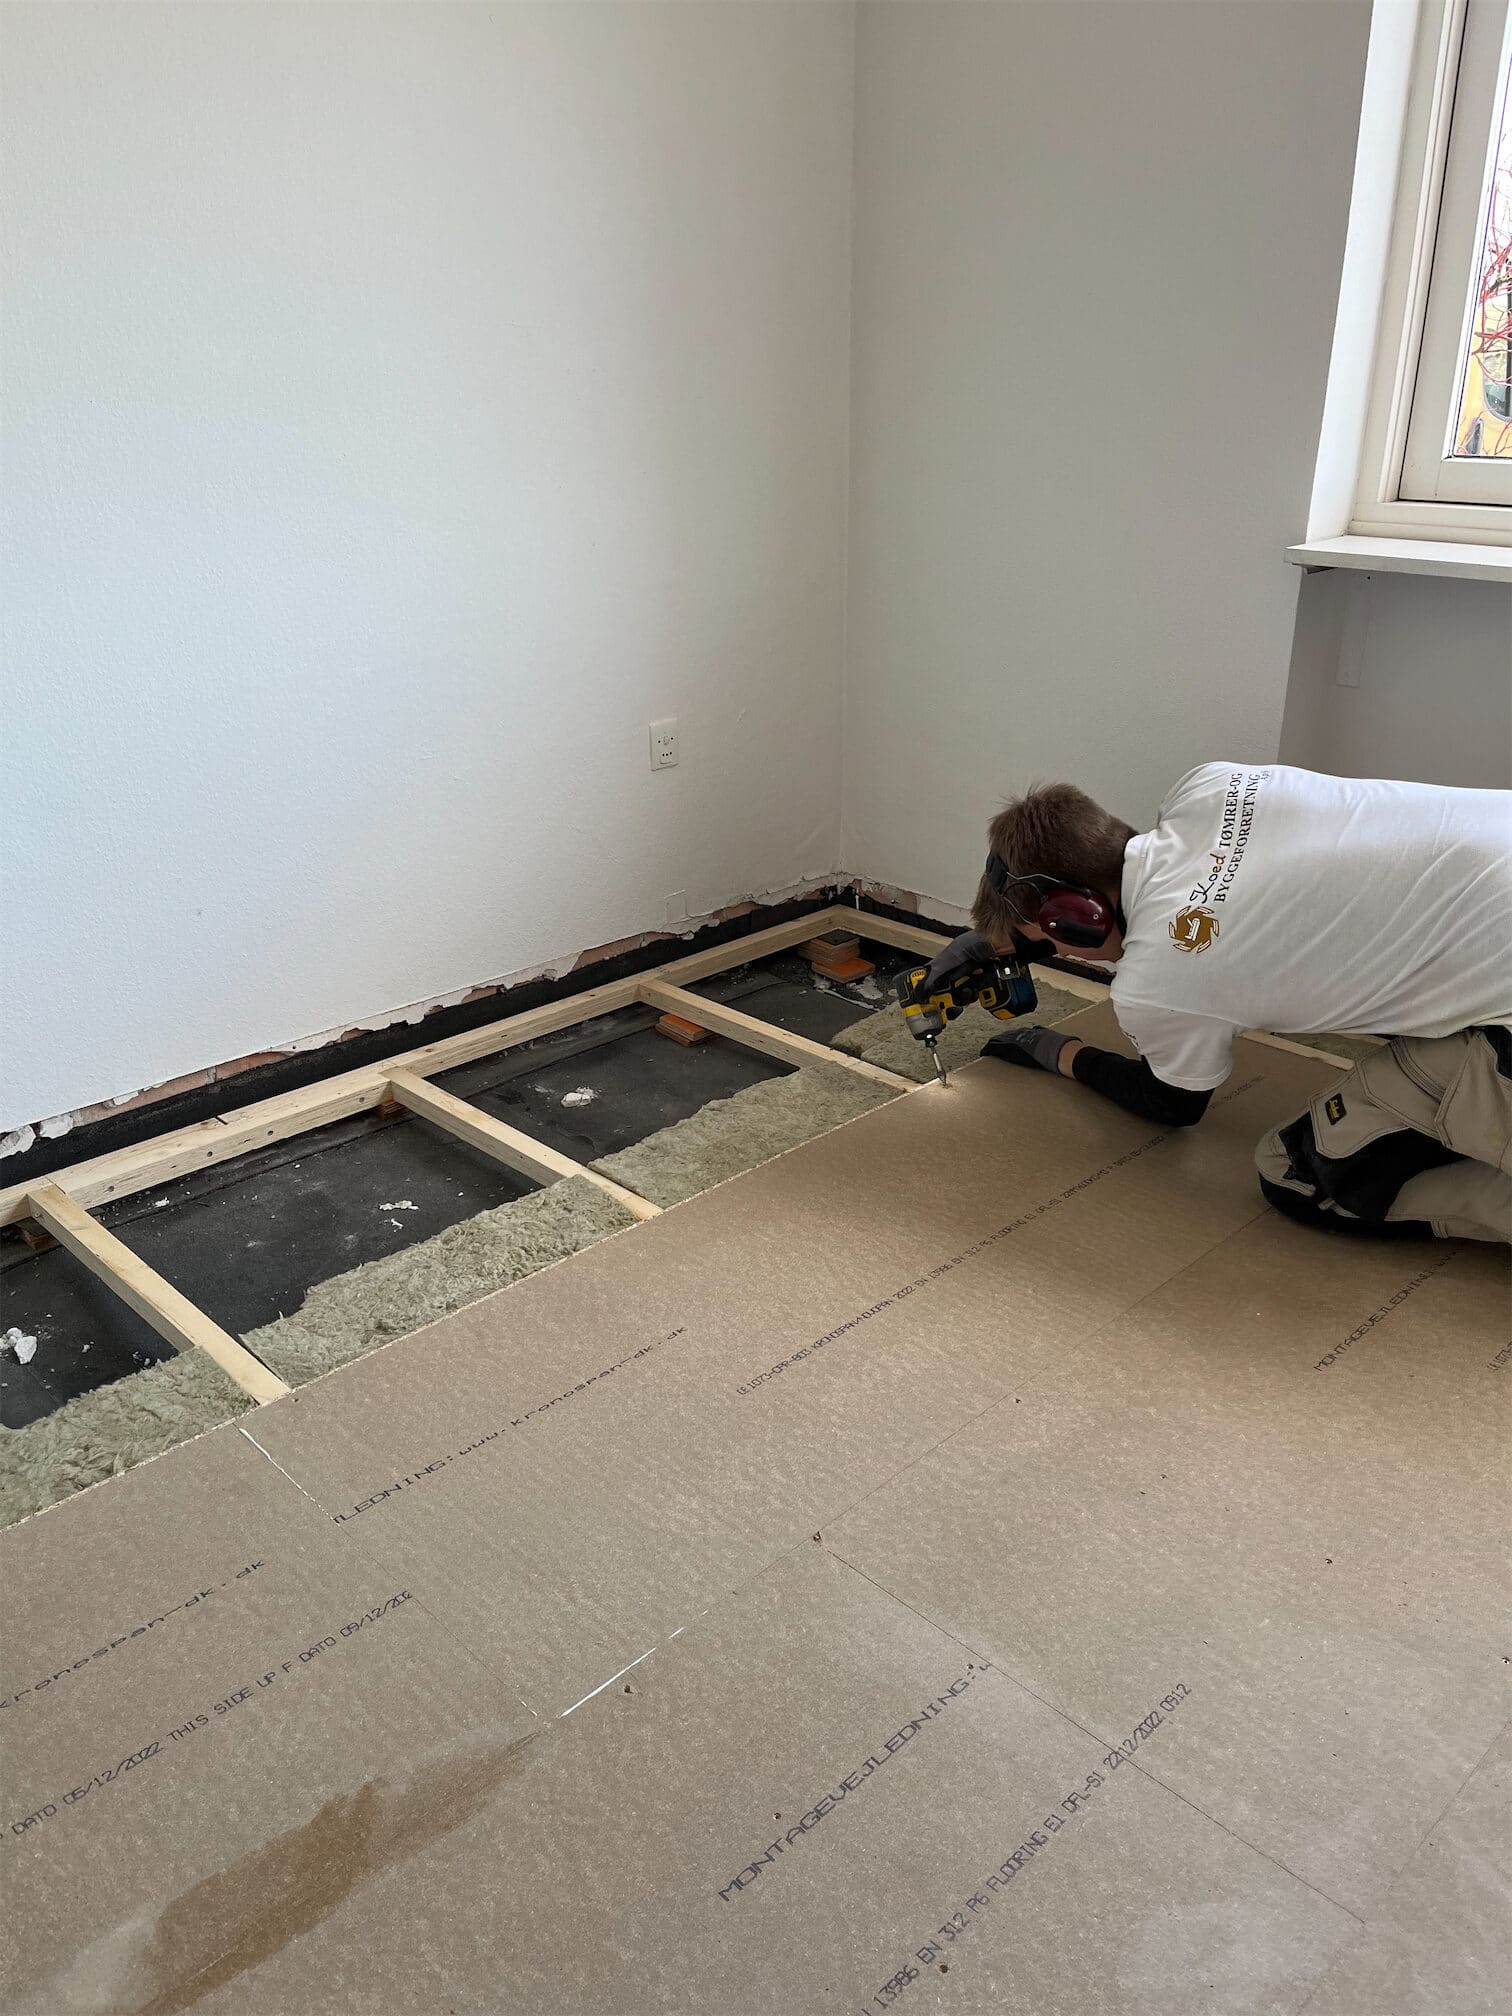 Tømrer i gang med at lægge nyt gulv på forsikringsopgave